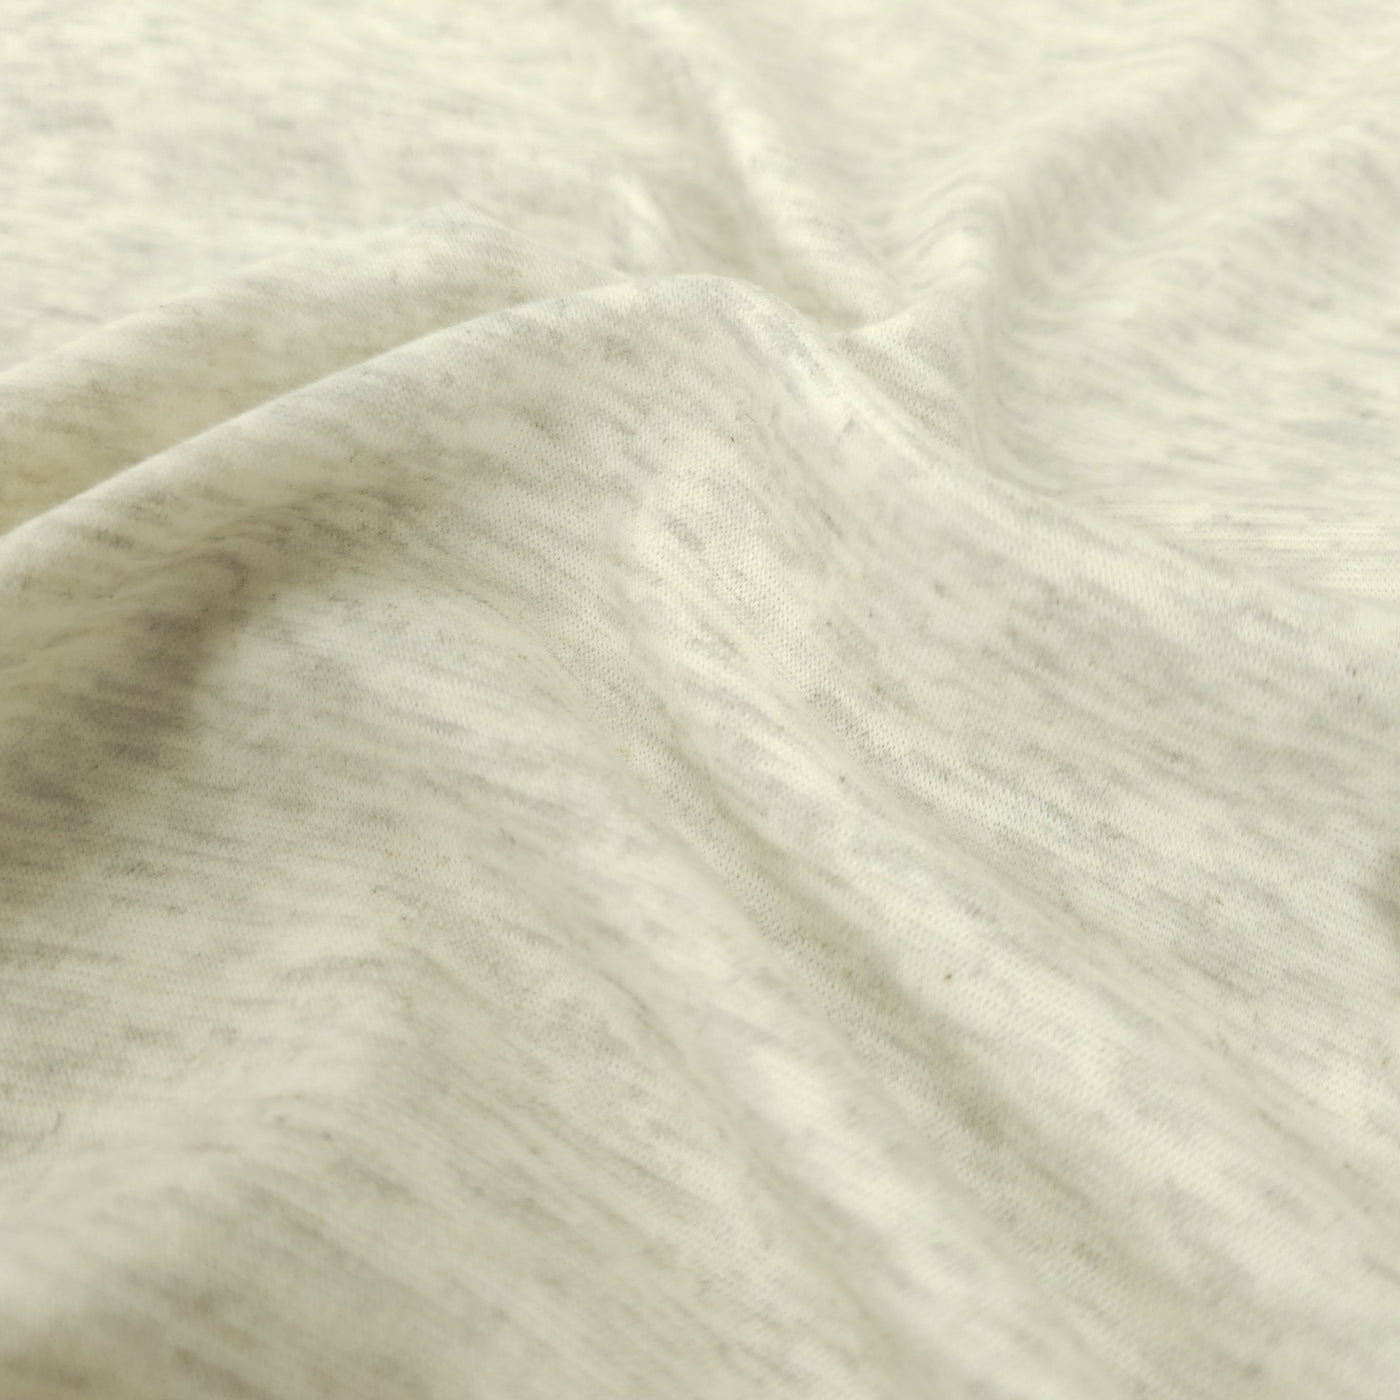 Stretch Sweatshirt Fabric | The Super Fluffy